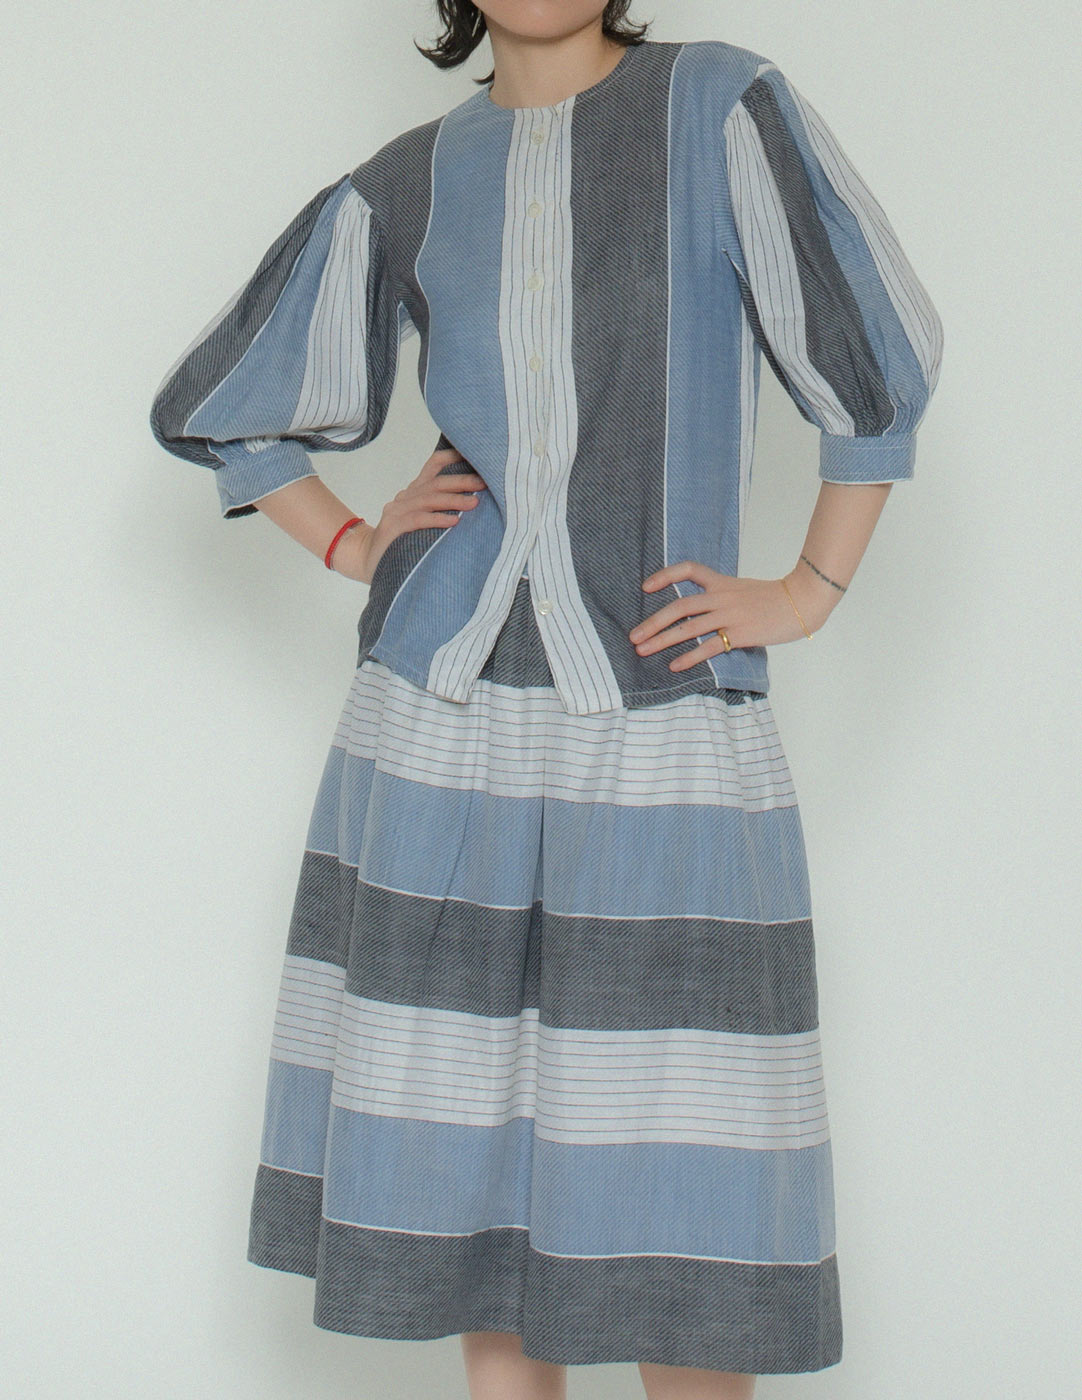 Lanvin vintage striped linen skirt set front detail